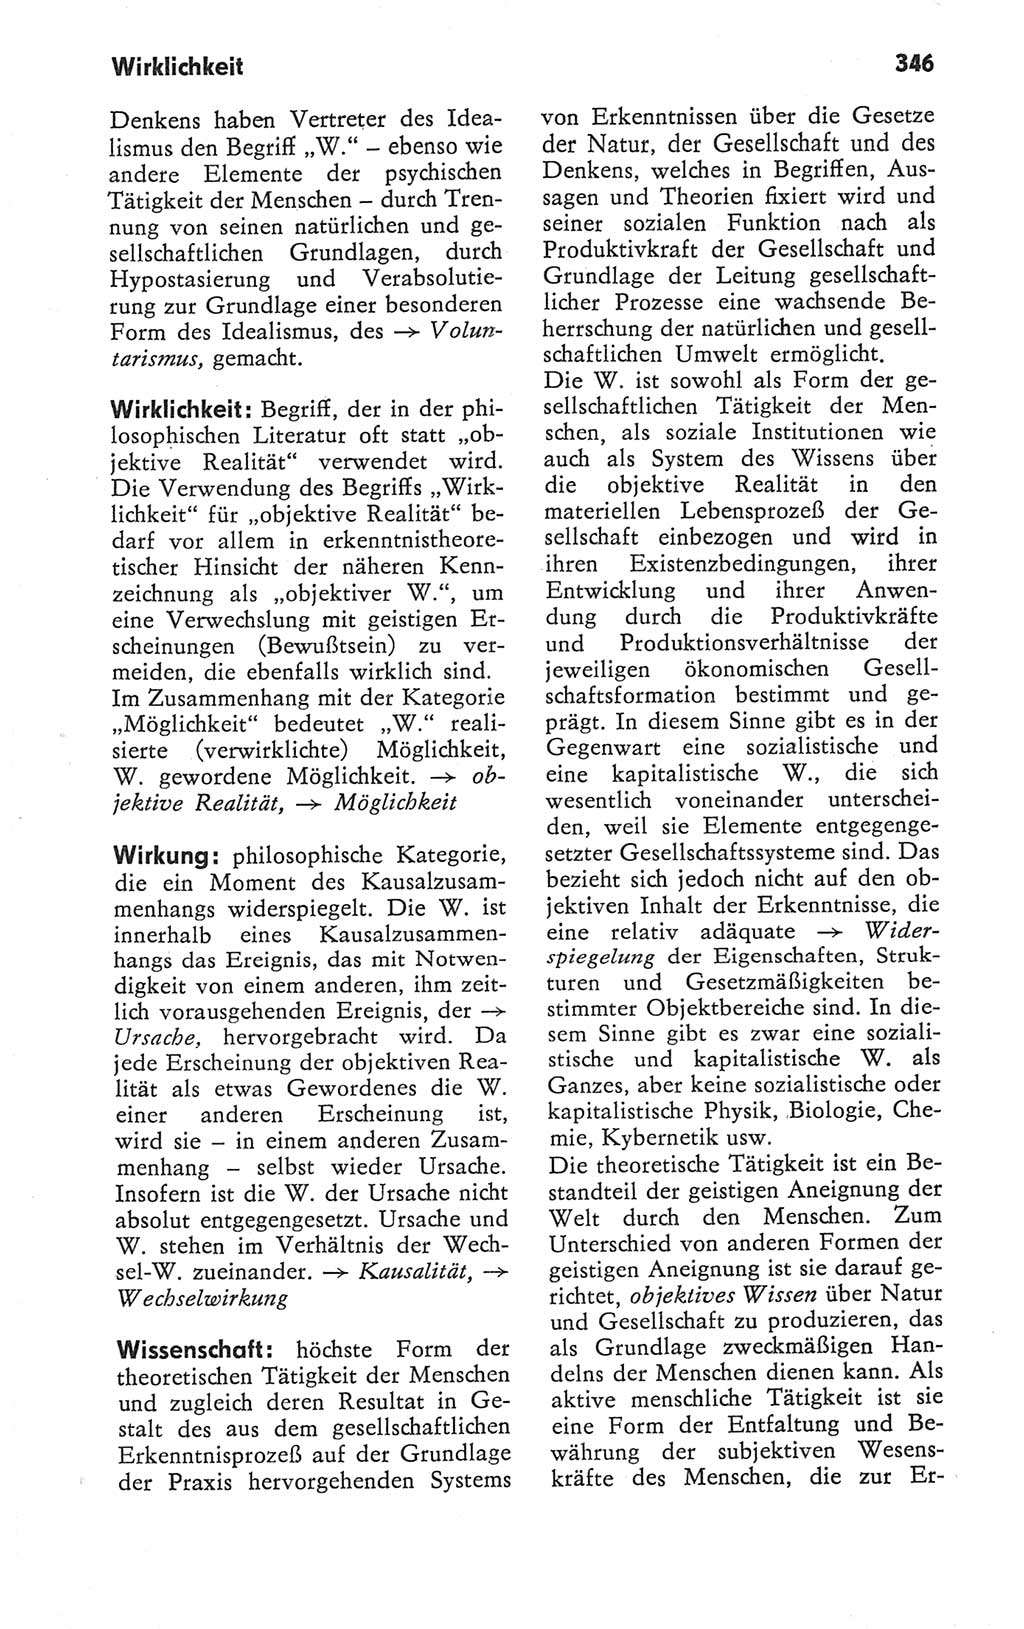 Kleines Wörterbuch der marxistisch-leninistischen Philosophie [Deutsche Demokratische Republik (DDR)] 1979, Seite 346 (Kl. Wb. ML Phil. DDR 1979, S. 346)